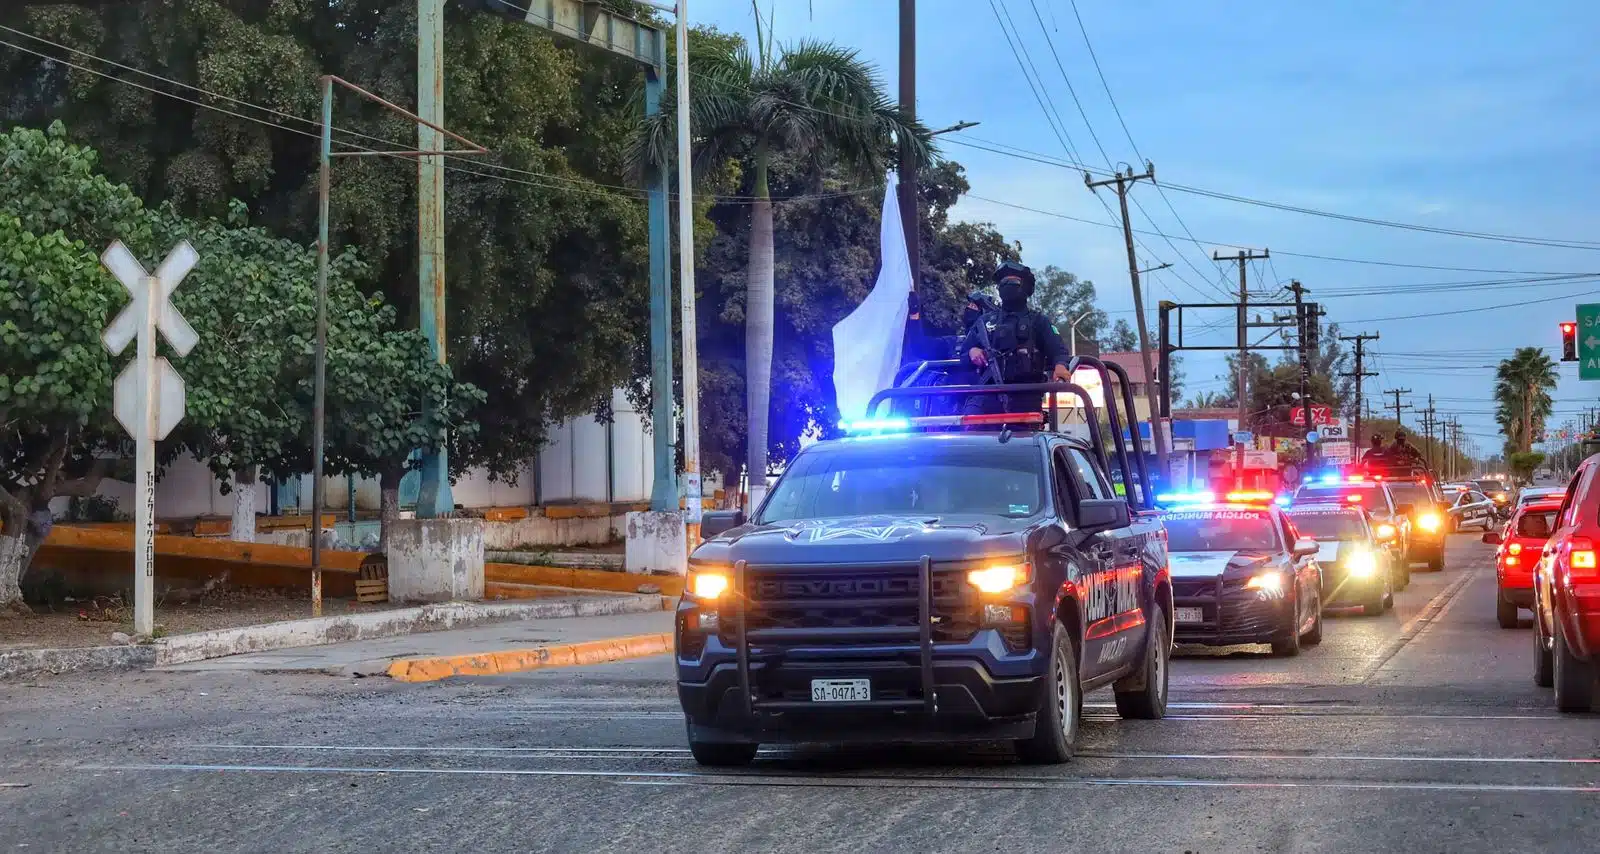 Patrullas de la Policía Municipal de Navolato salen en caravana con una bandera blanca en símbolo de que hubo saldo blanco durante Semana Santa